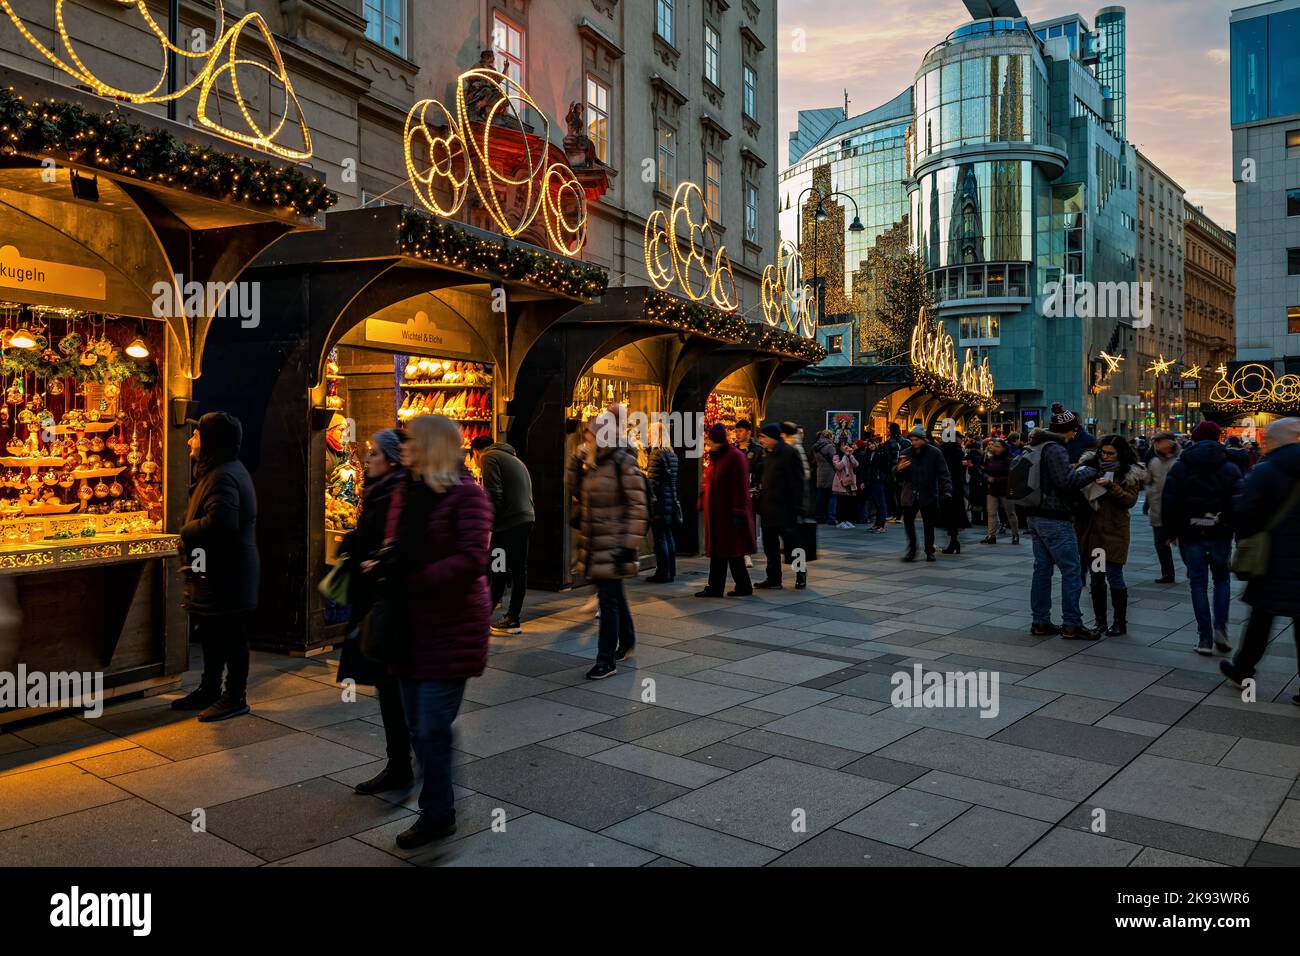 People walking along illuminated  kiosks at Christmas market in Vienna, Austria. Stock Photo